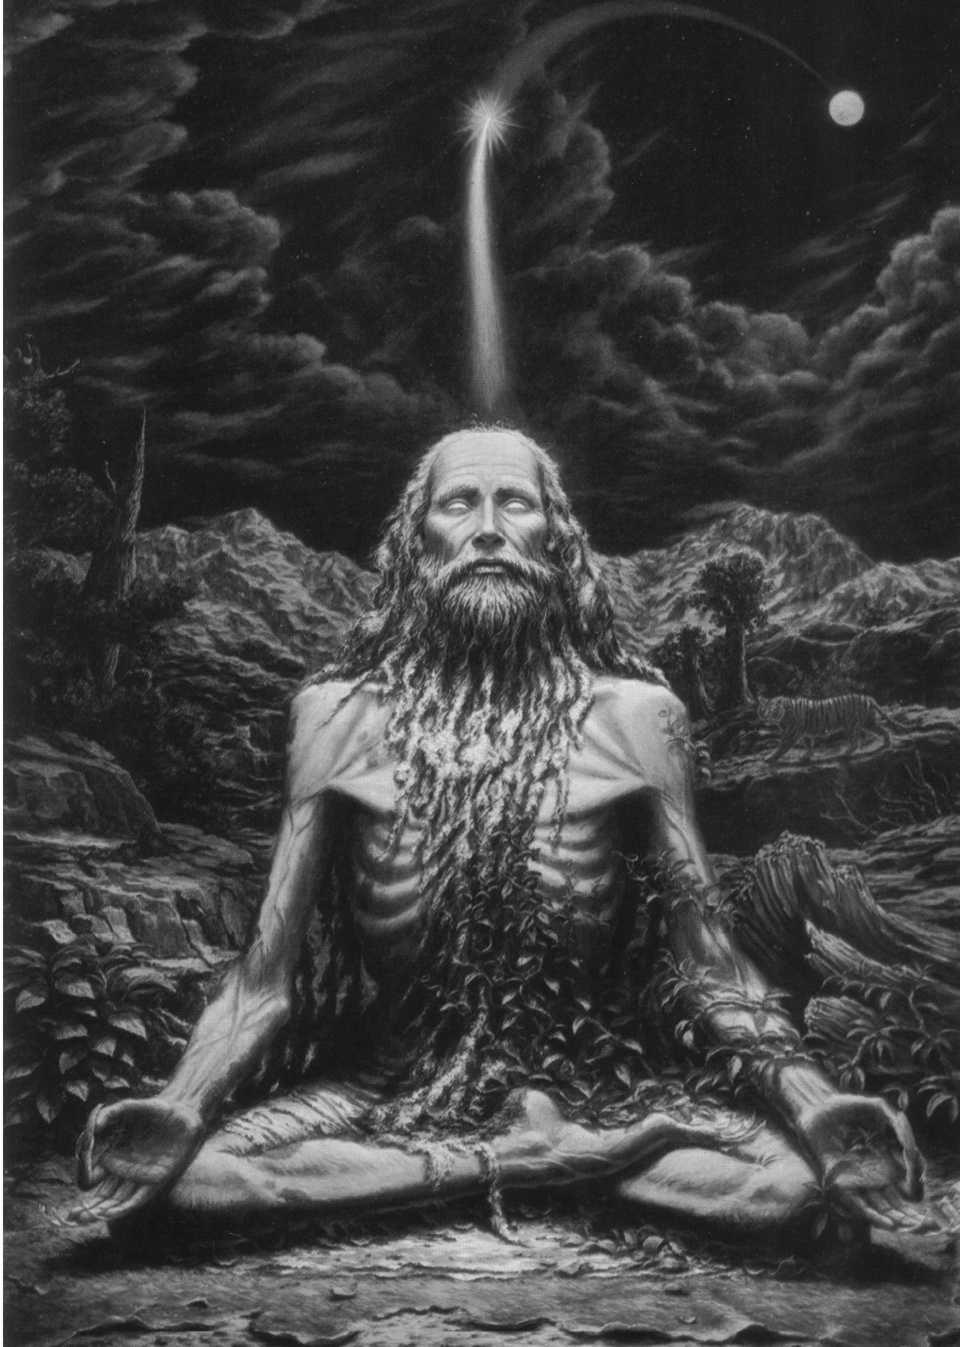 Indischer Yogi in mystischer Versenkung (Meditation)